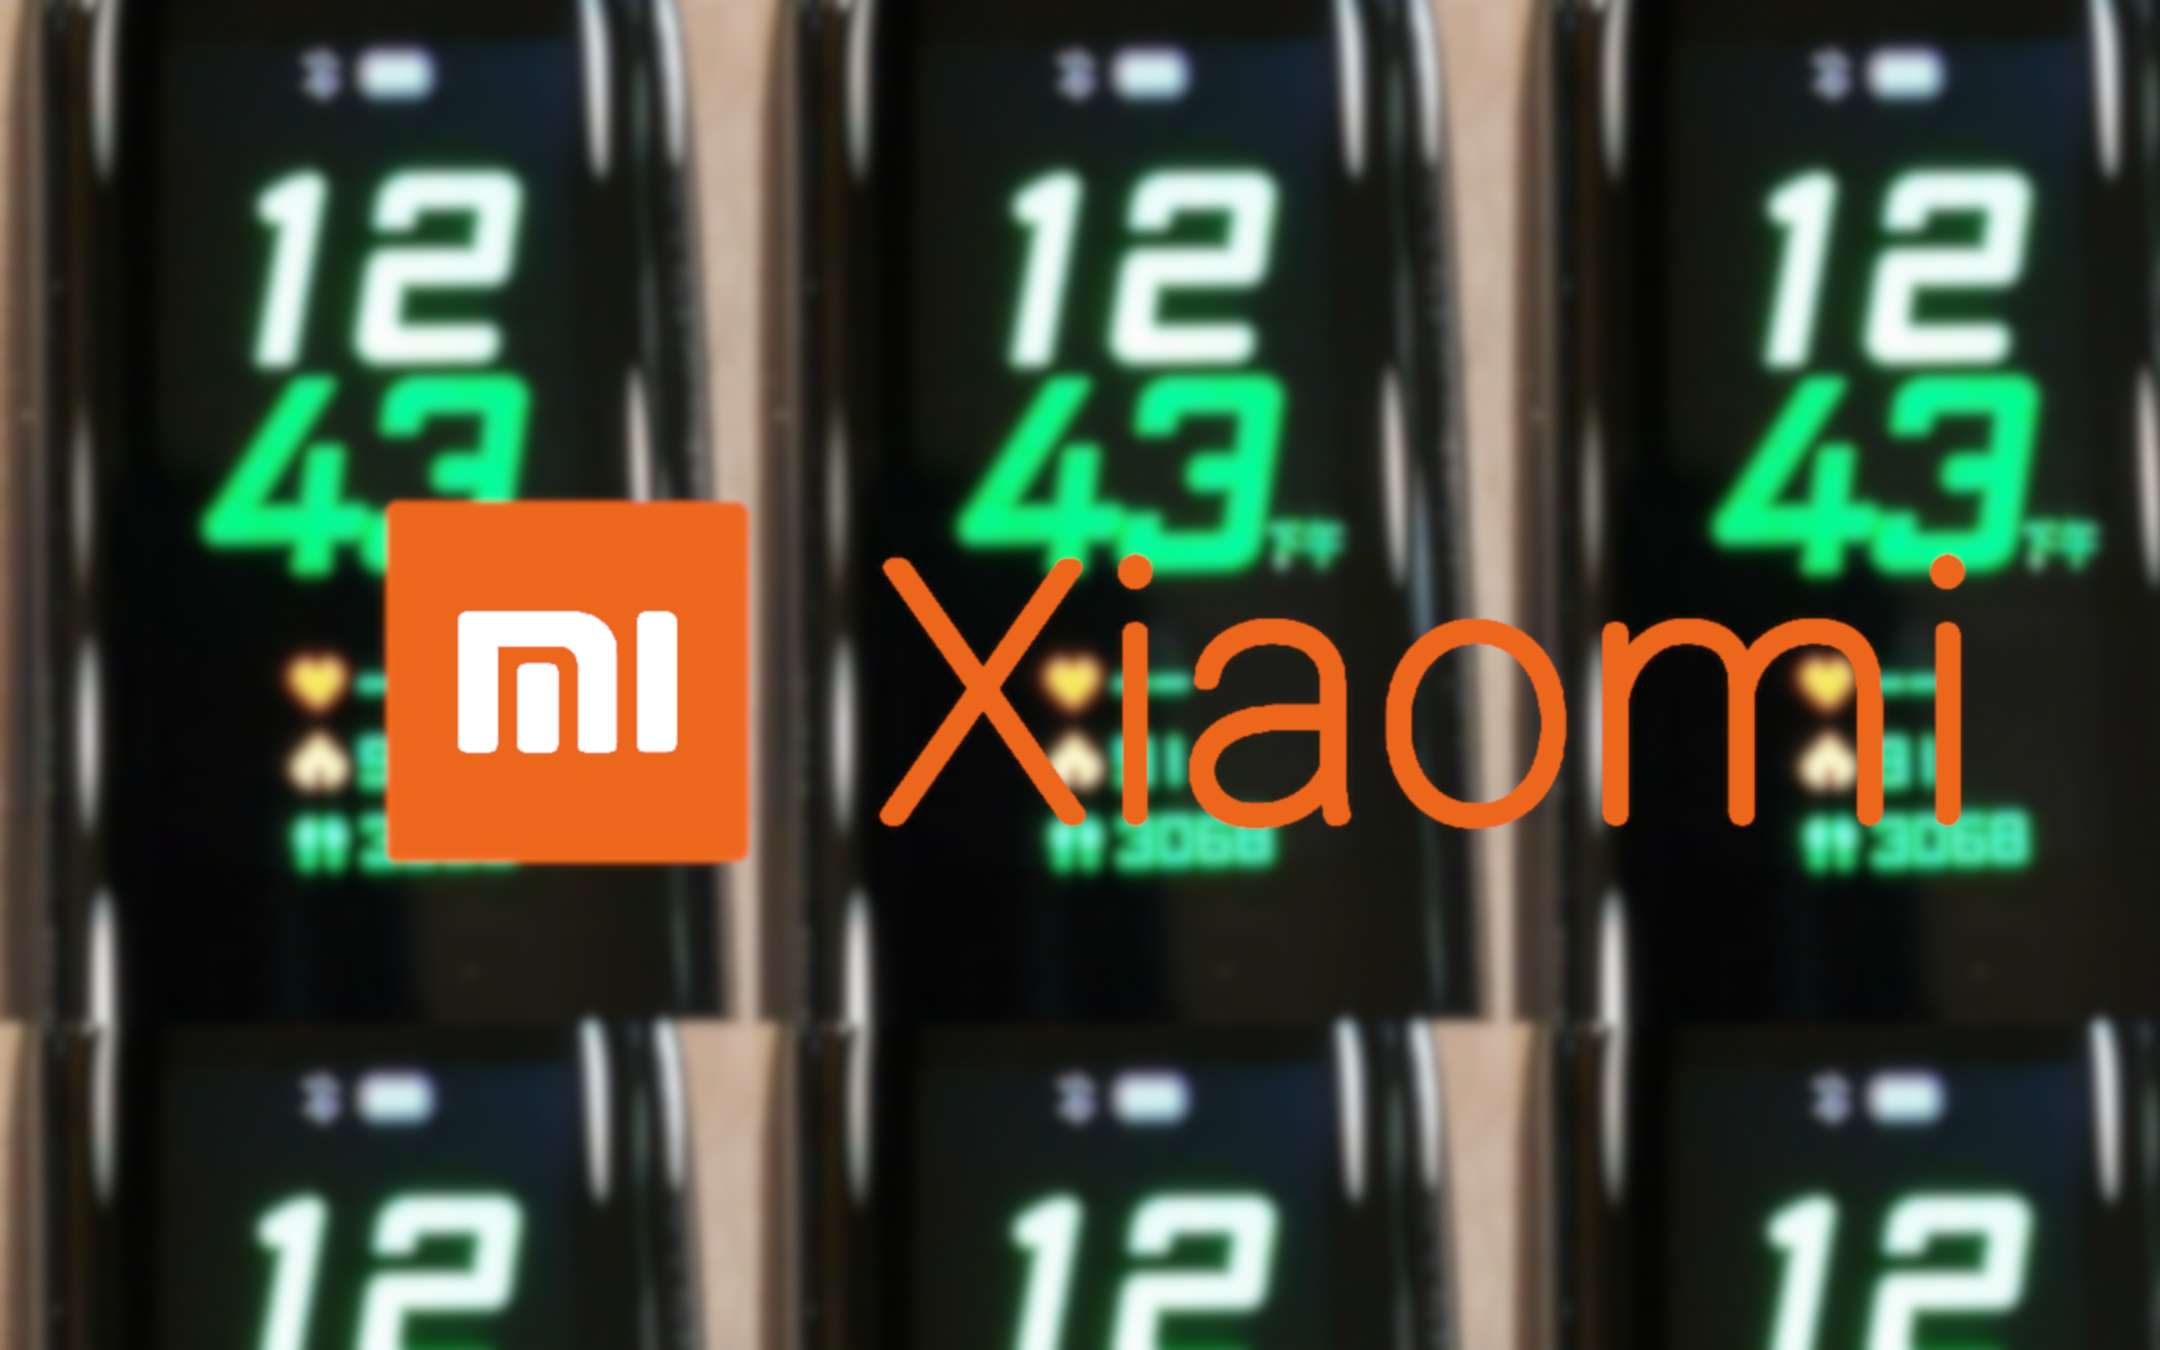 Xiaomi Mi Band 4 avrà un display a colori